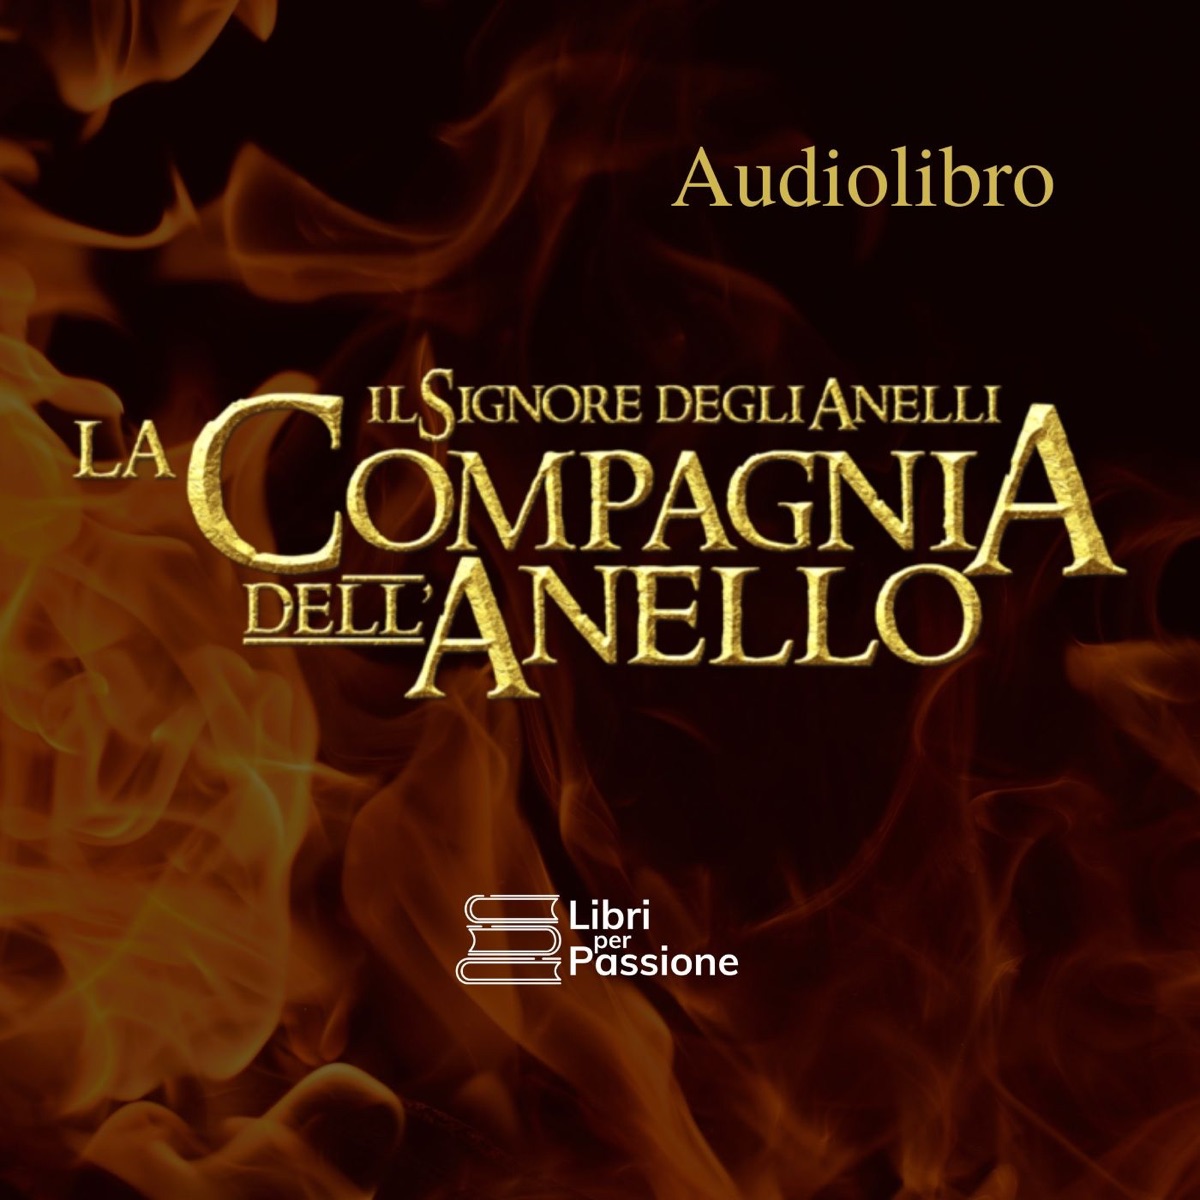 Il Signore degli Anelli: un Audiolibro a cura di Libri Per Passione –  Italia Podcast